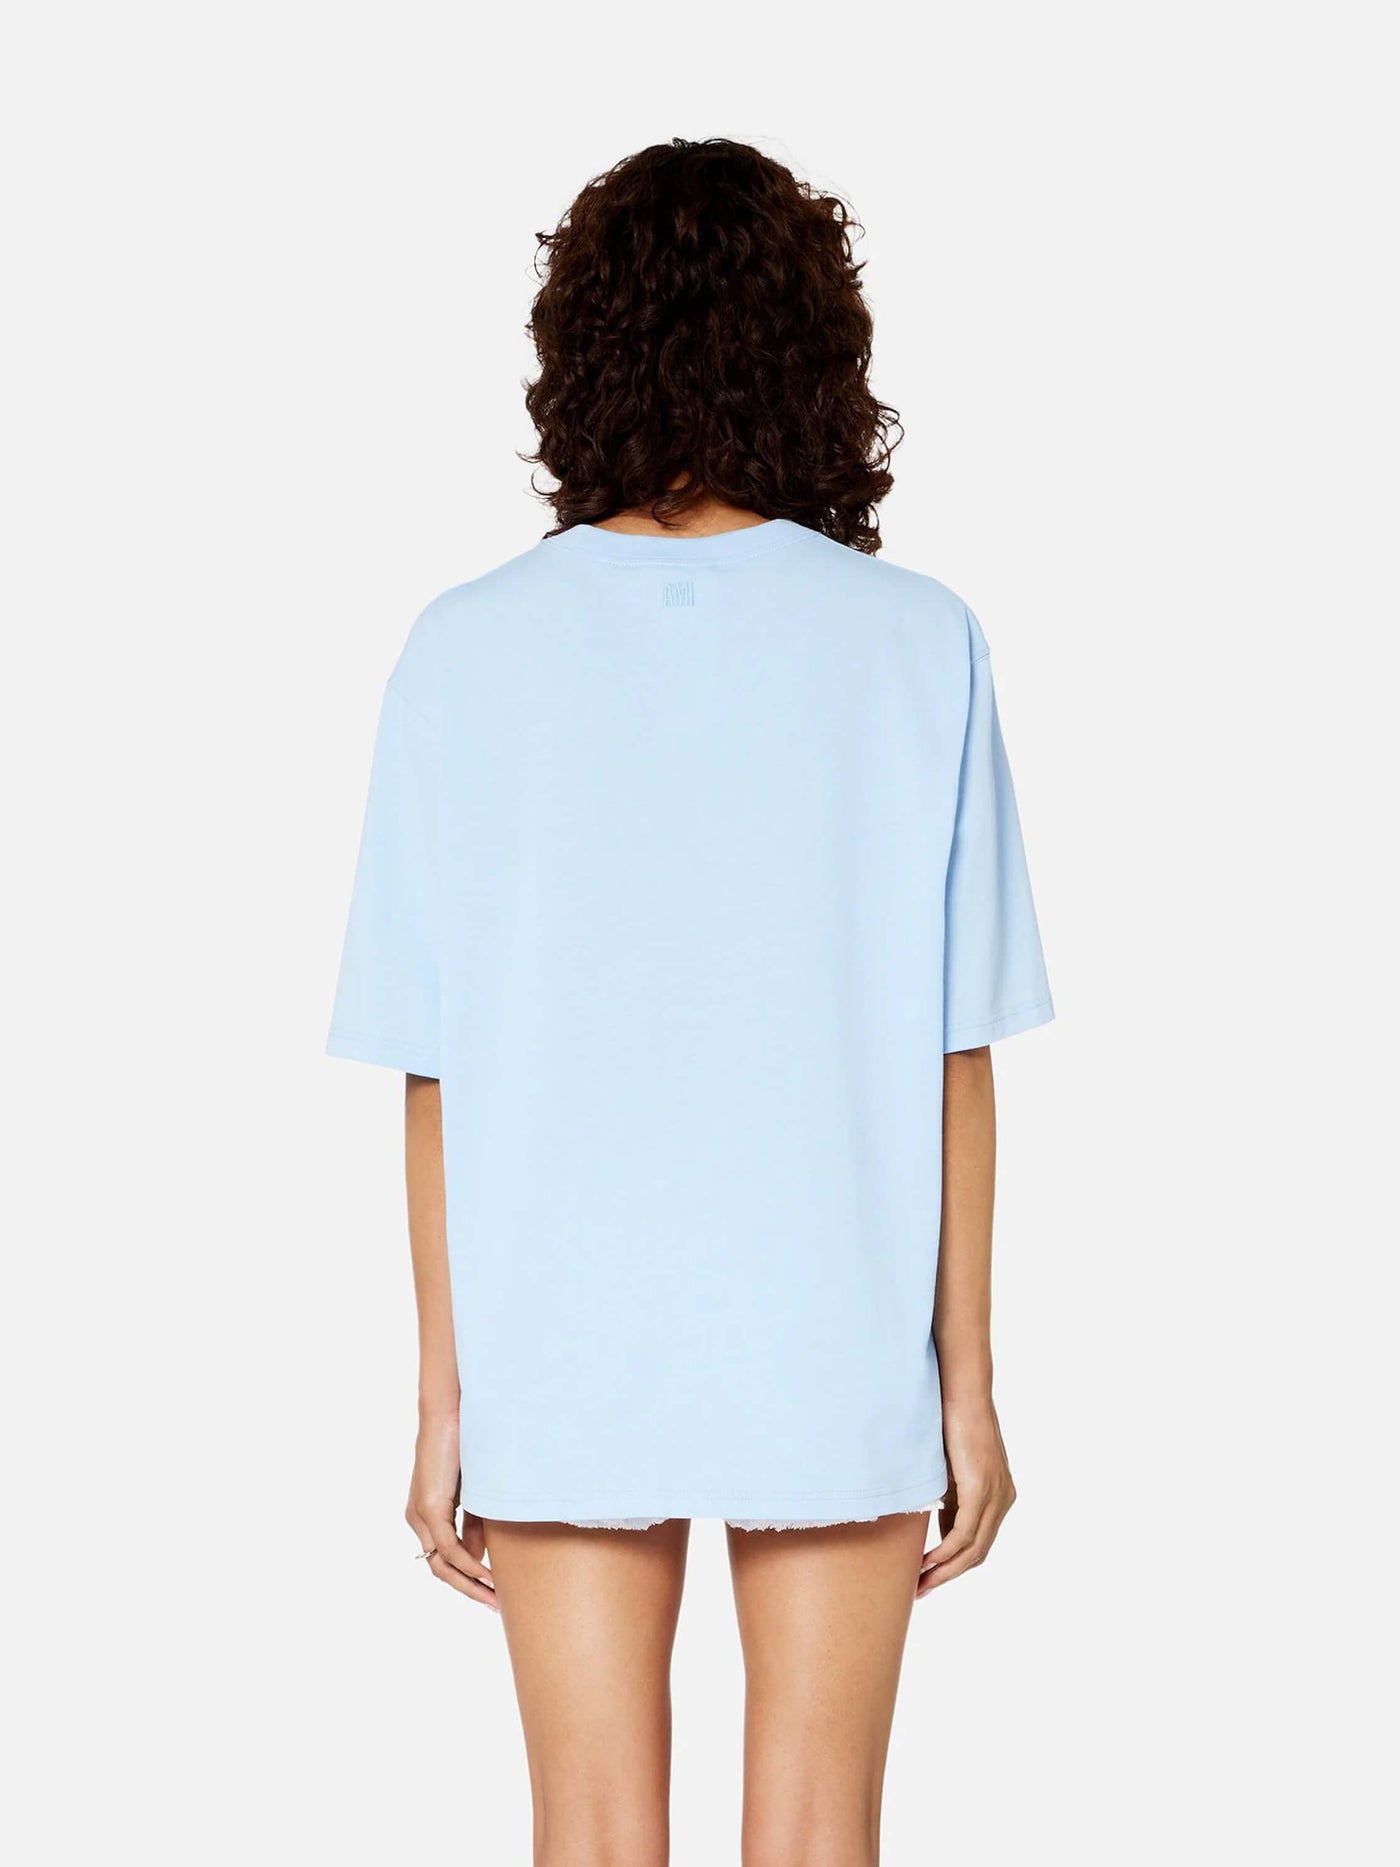 AMI Paris Shirts & Polos | Oversize T-Shirt sky blau tonal de Coeur | UTS004.726 464 sky / ADAM/EVE